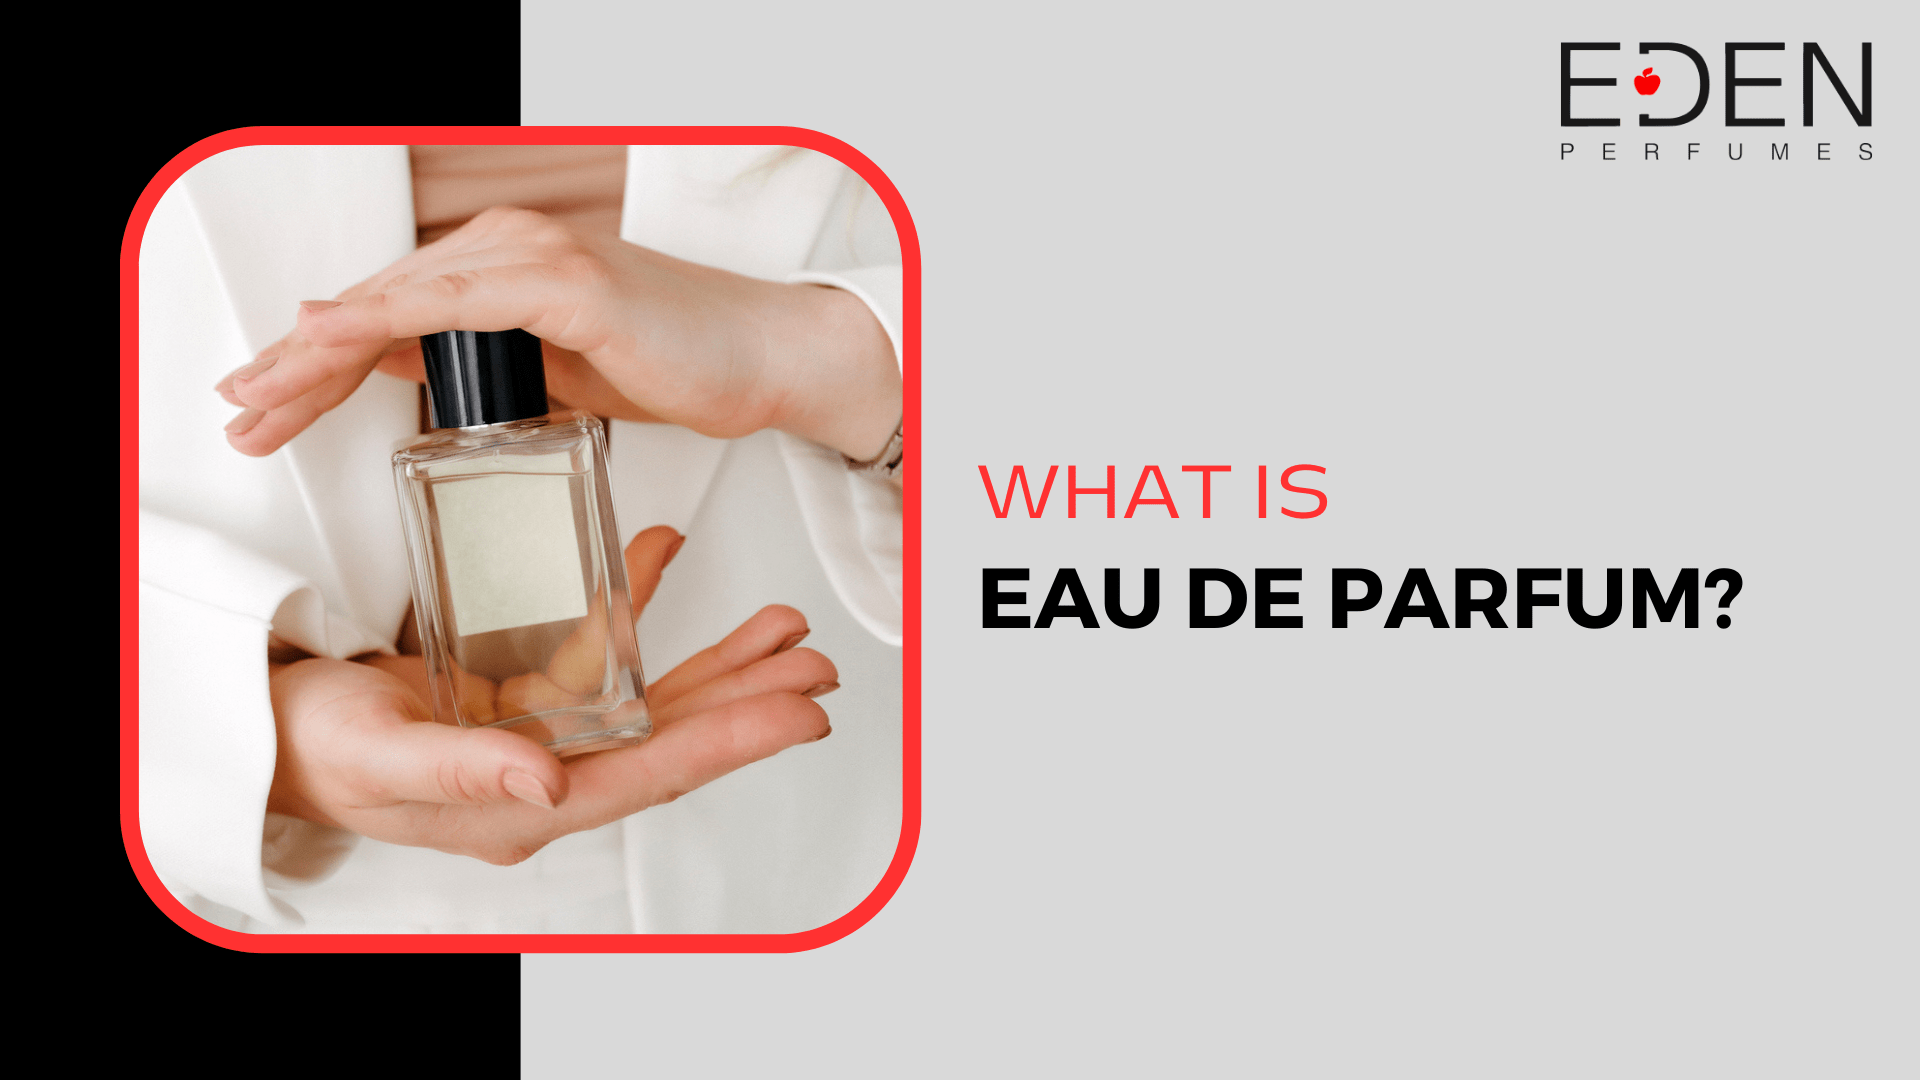 What is eau de parfum?